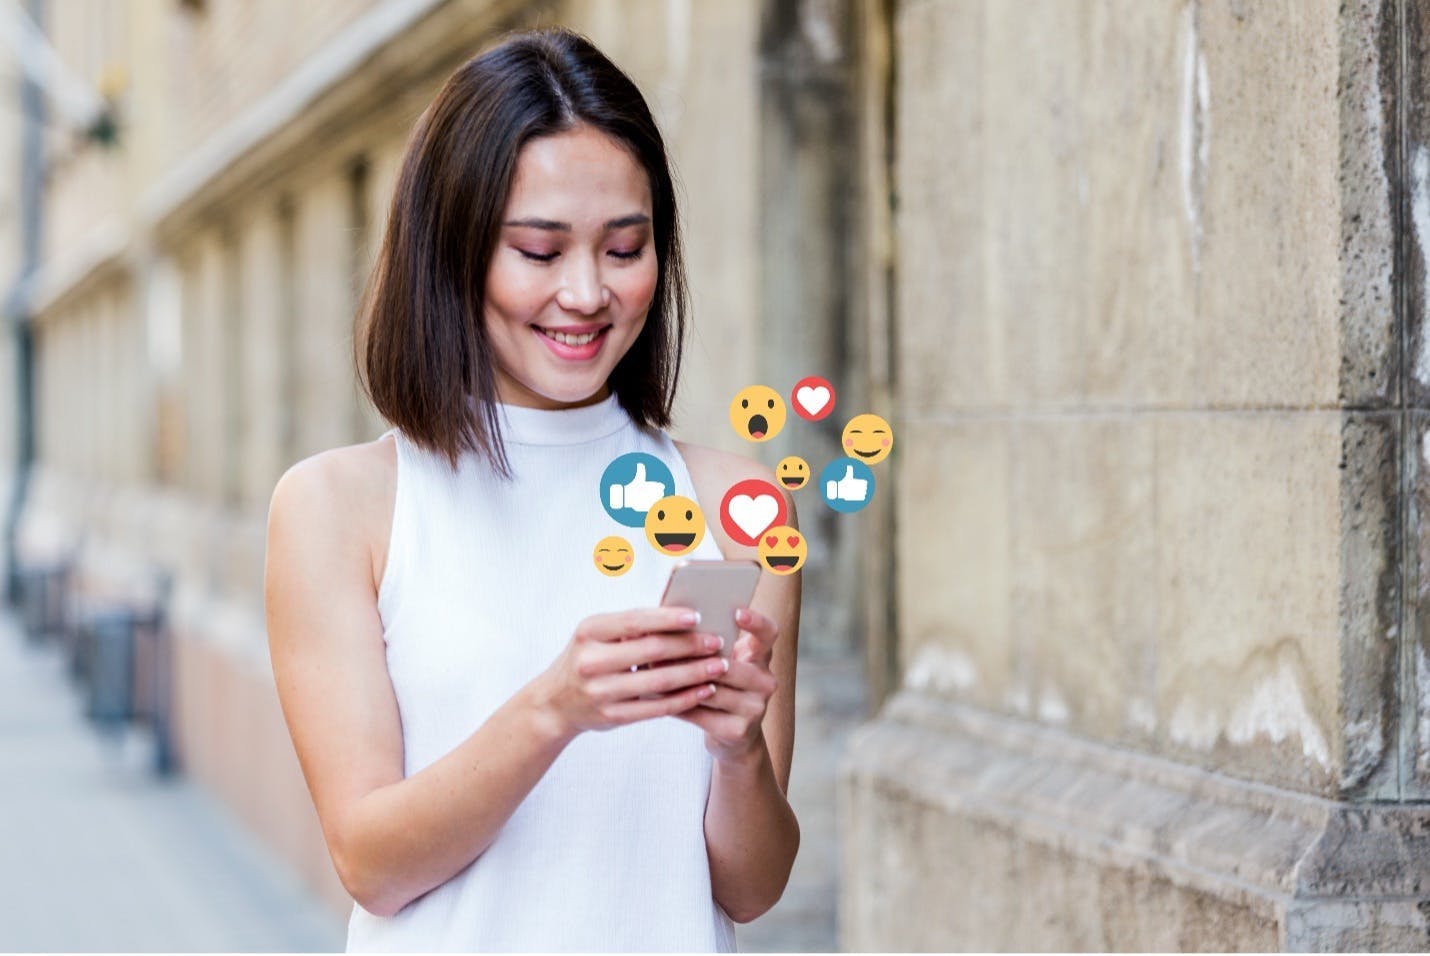 Een vrouw loopt op straat en kijkt op haar mobiel waar verschillende emojis uit komen zweven. Ze zou een social media manager kunnen zijn die engaged met haar community terwijl ze weg is.. 